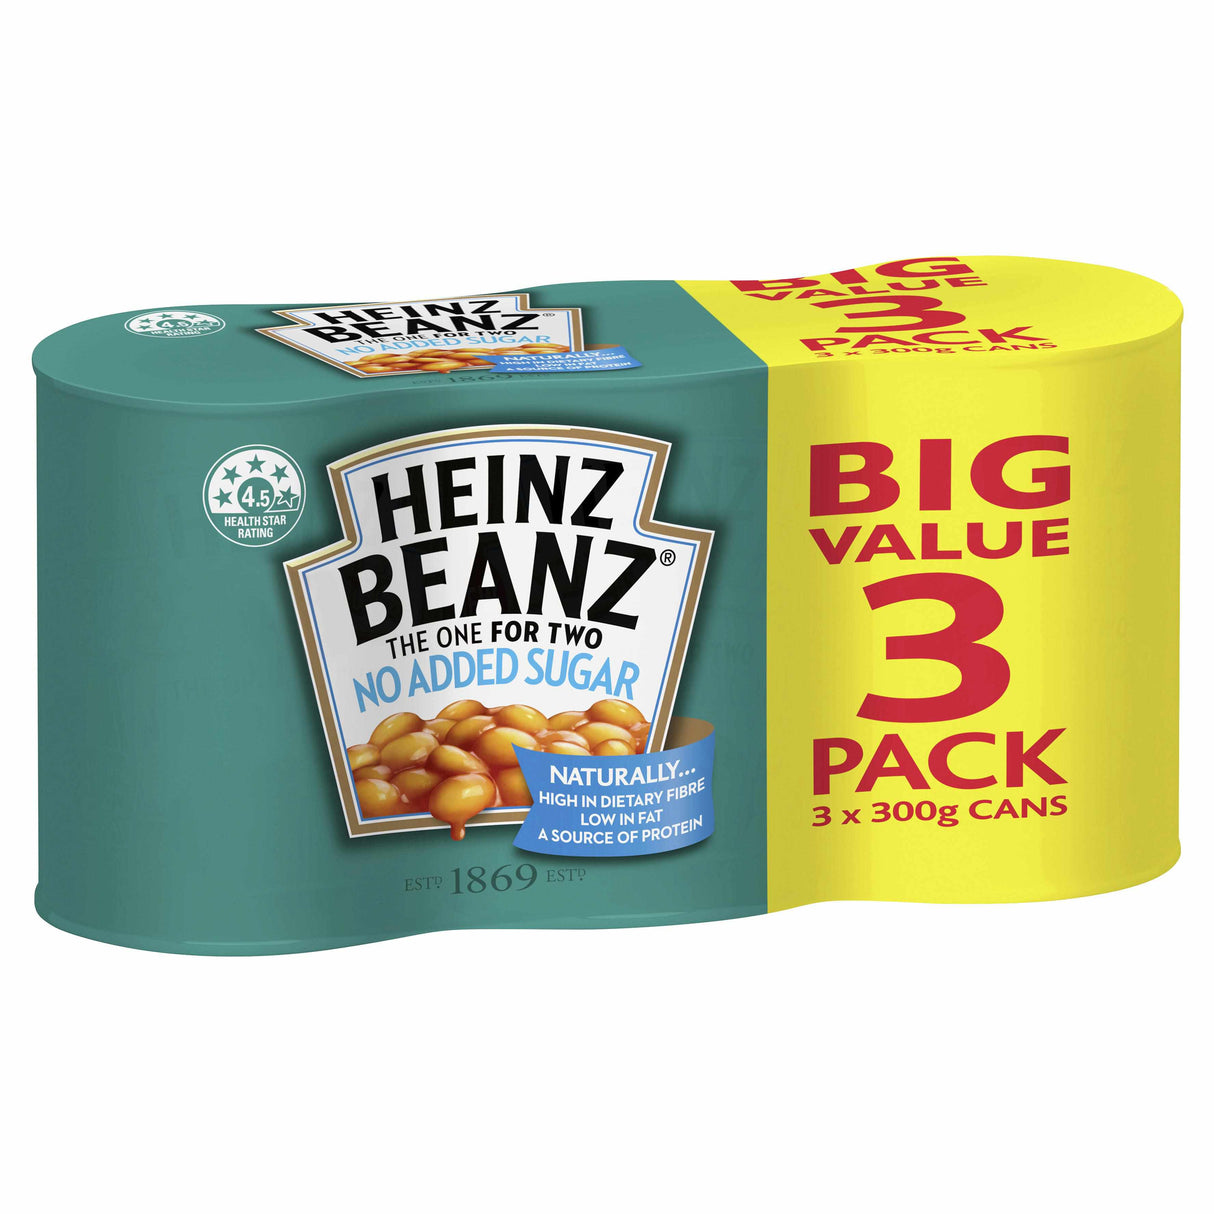 Heinz Beanz No Added Sugar 3x300g